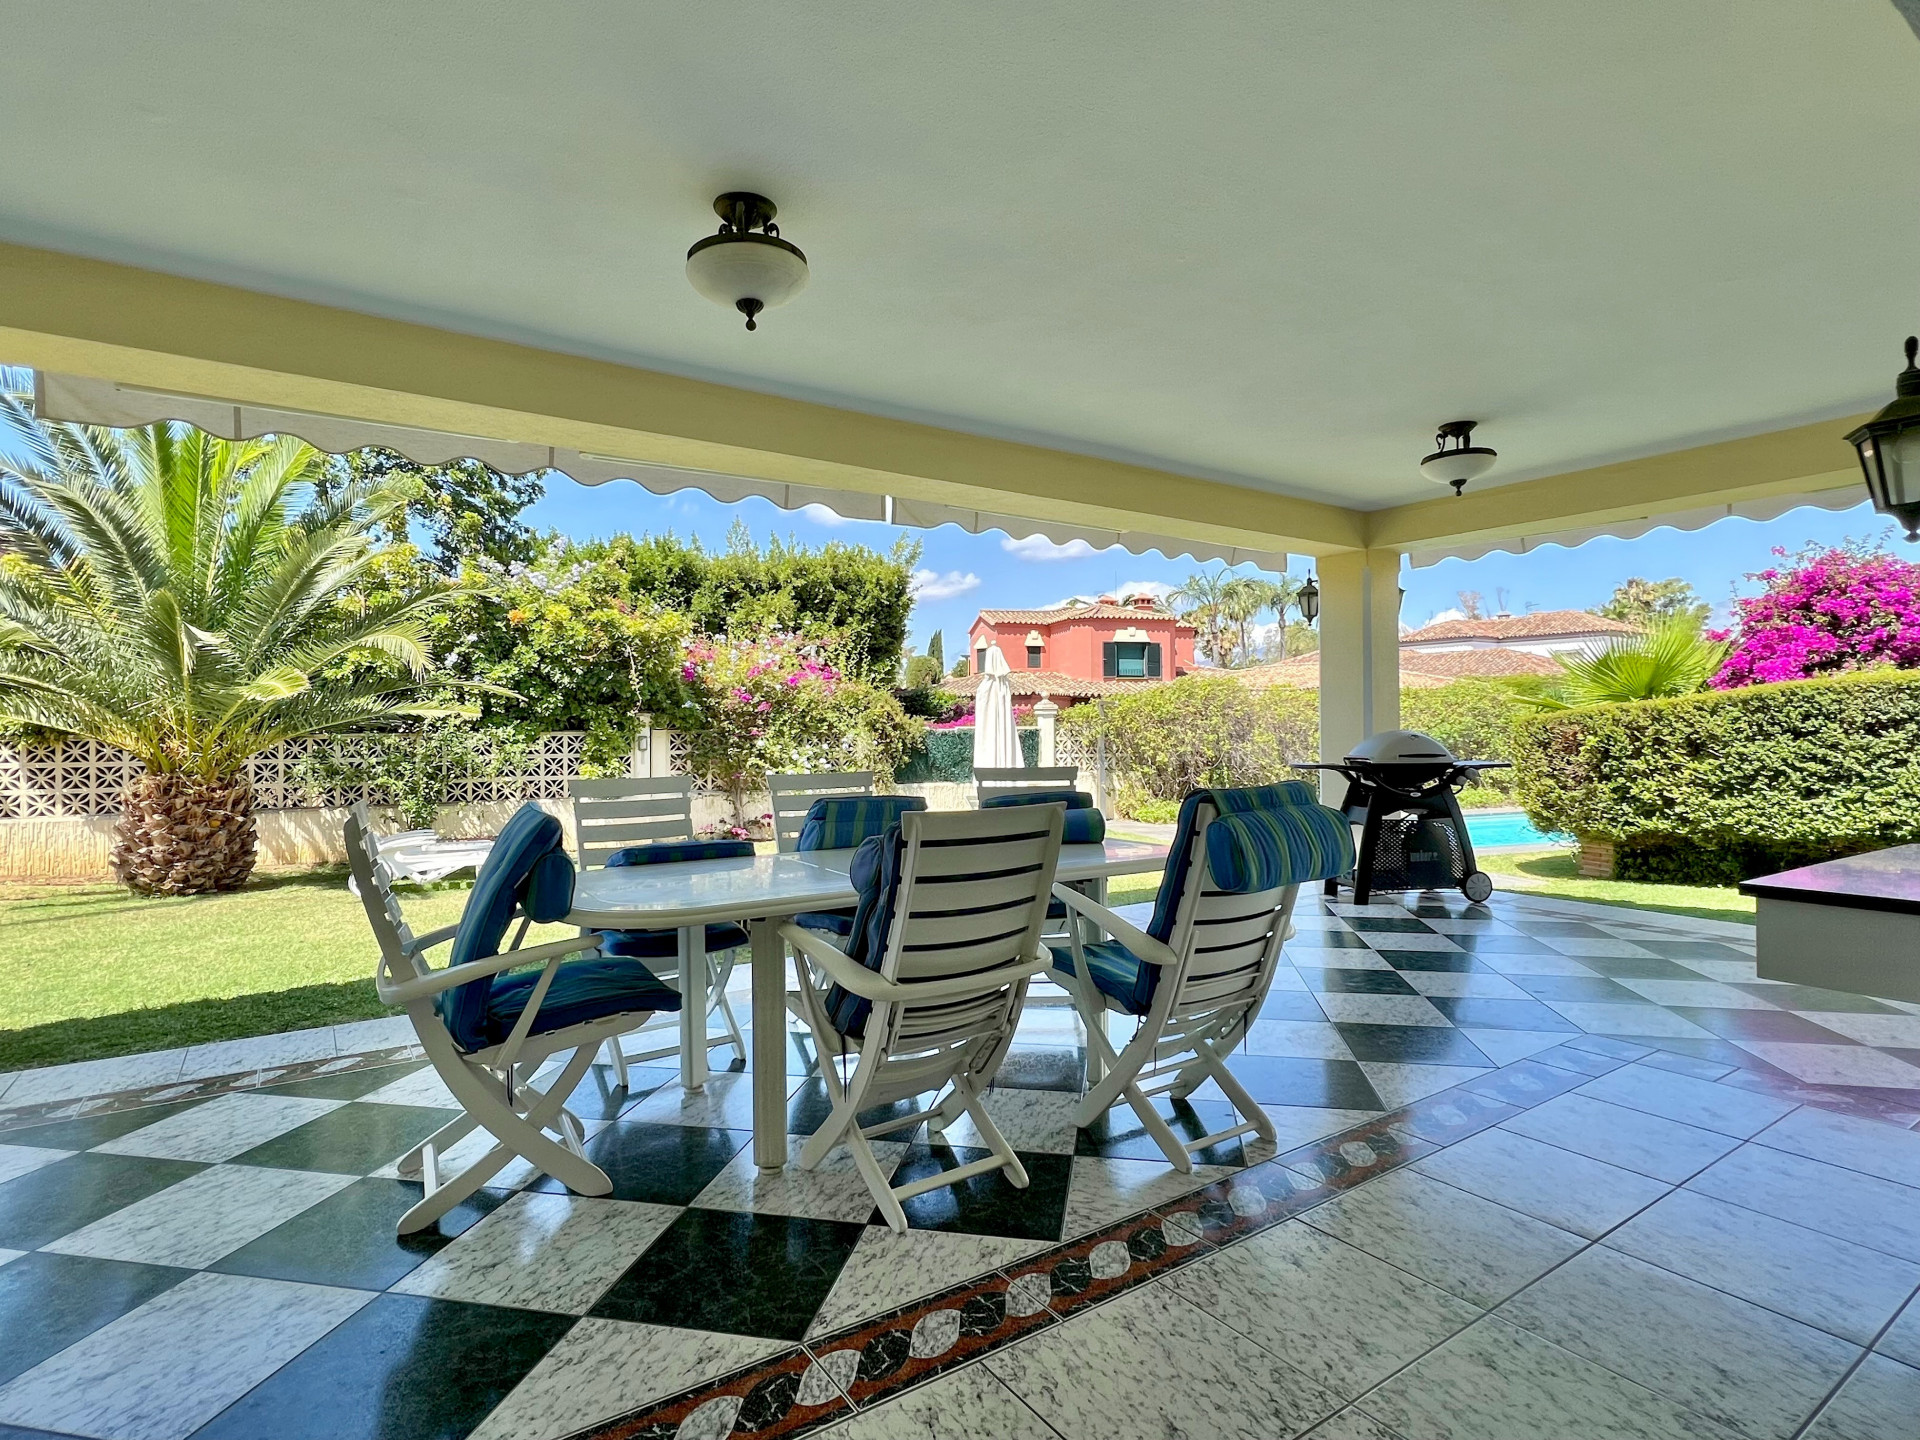 Esta villa en Guadalmina Baja es simplemente una gran inversión. Ubicada en un entorno exclusivo y tranquilo, ofrece el lujo y la comodidad que uno esperaría en una residencia de alto nivel en la Costa del Sol